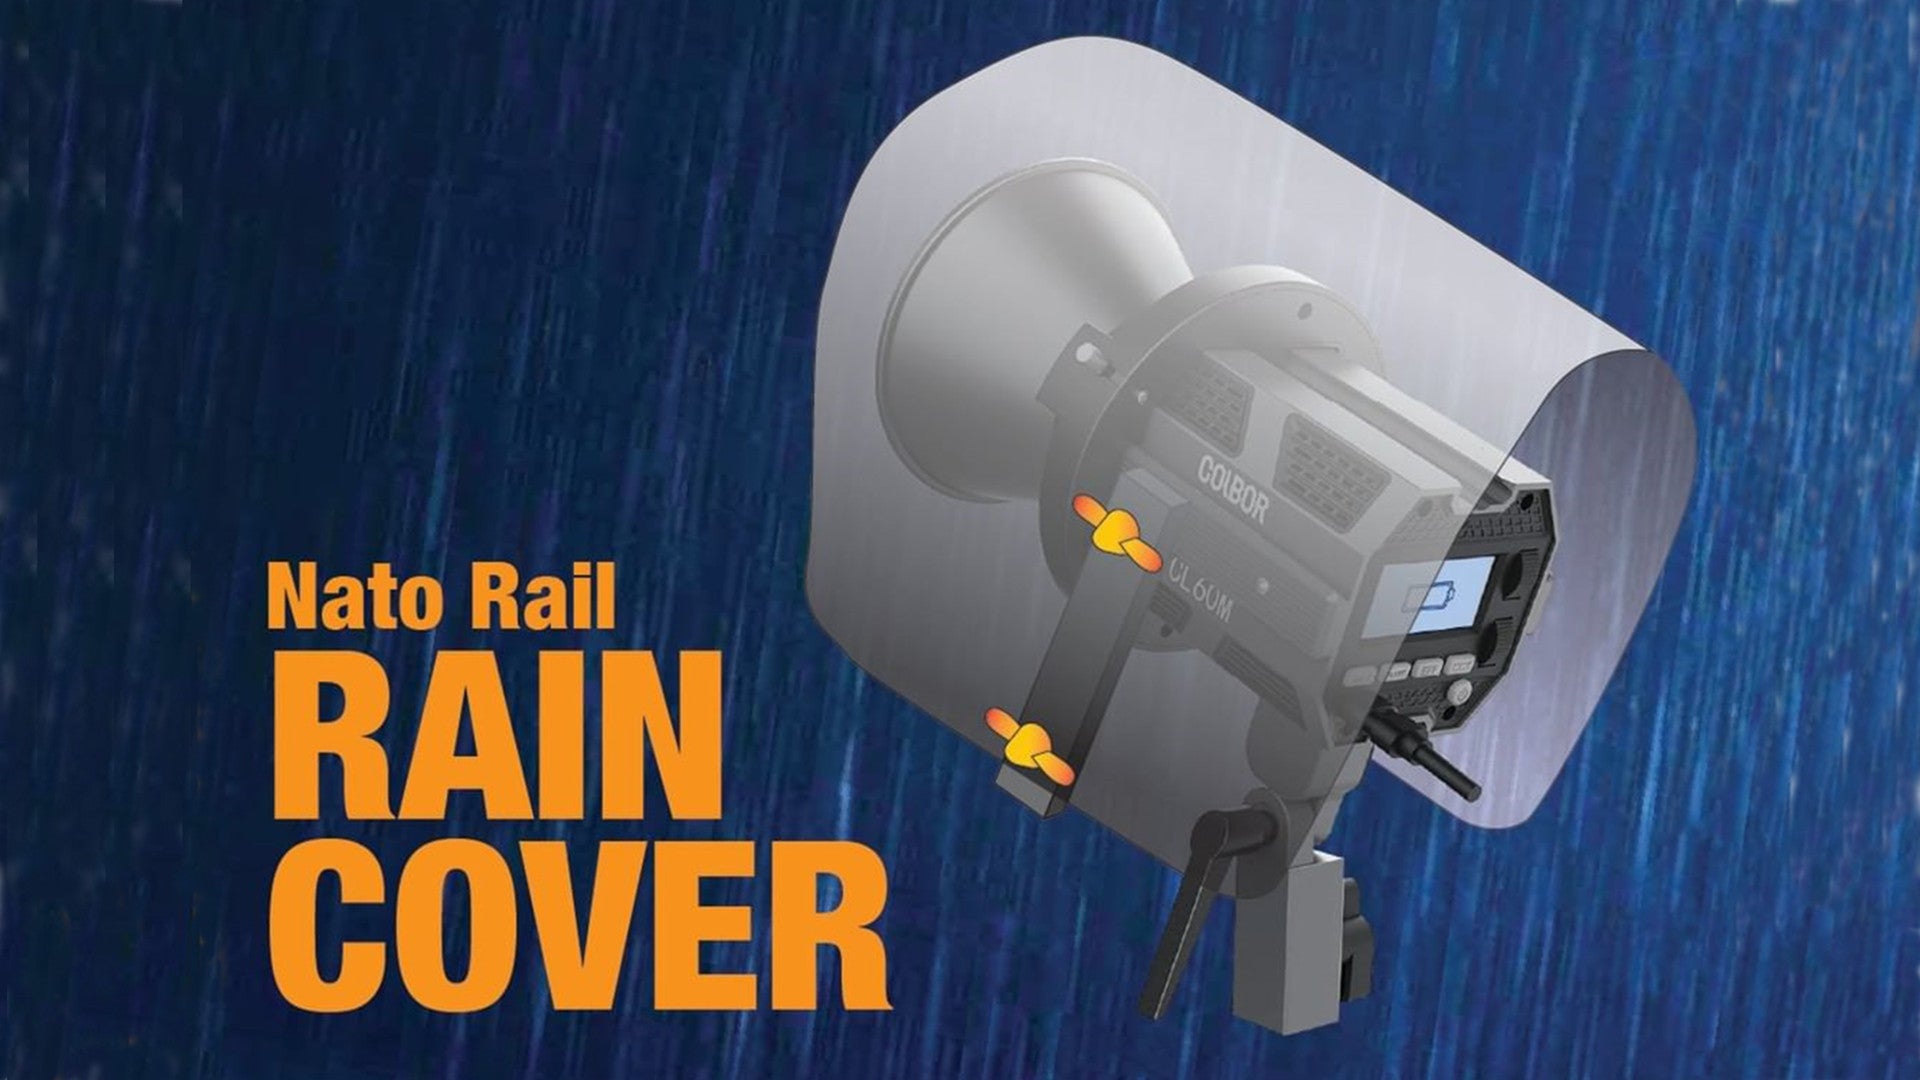 NATO Rail Rain Cover for COLBOR COB Lights @hkfung